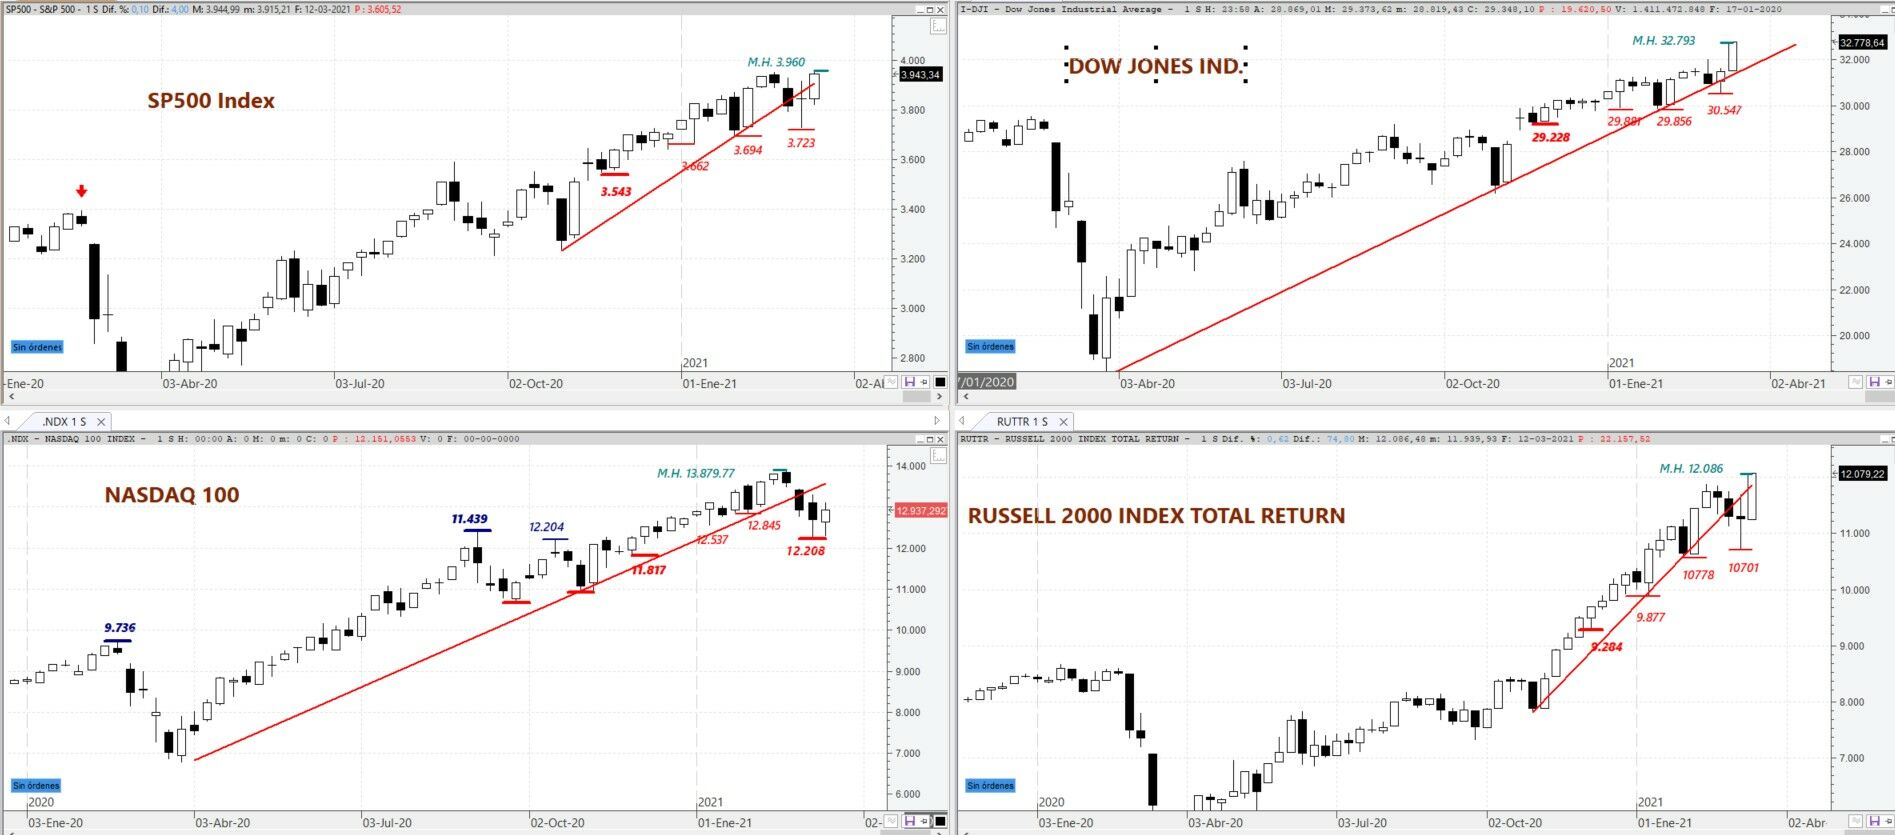 Gráficos semanales de: S&P 500, DOW JONES Ind, NASDAQ 100 y Russell 2000